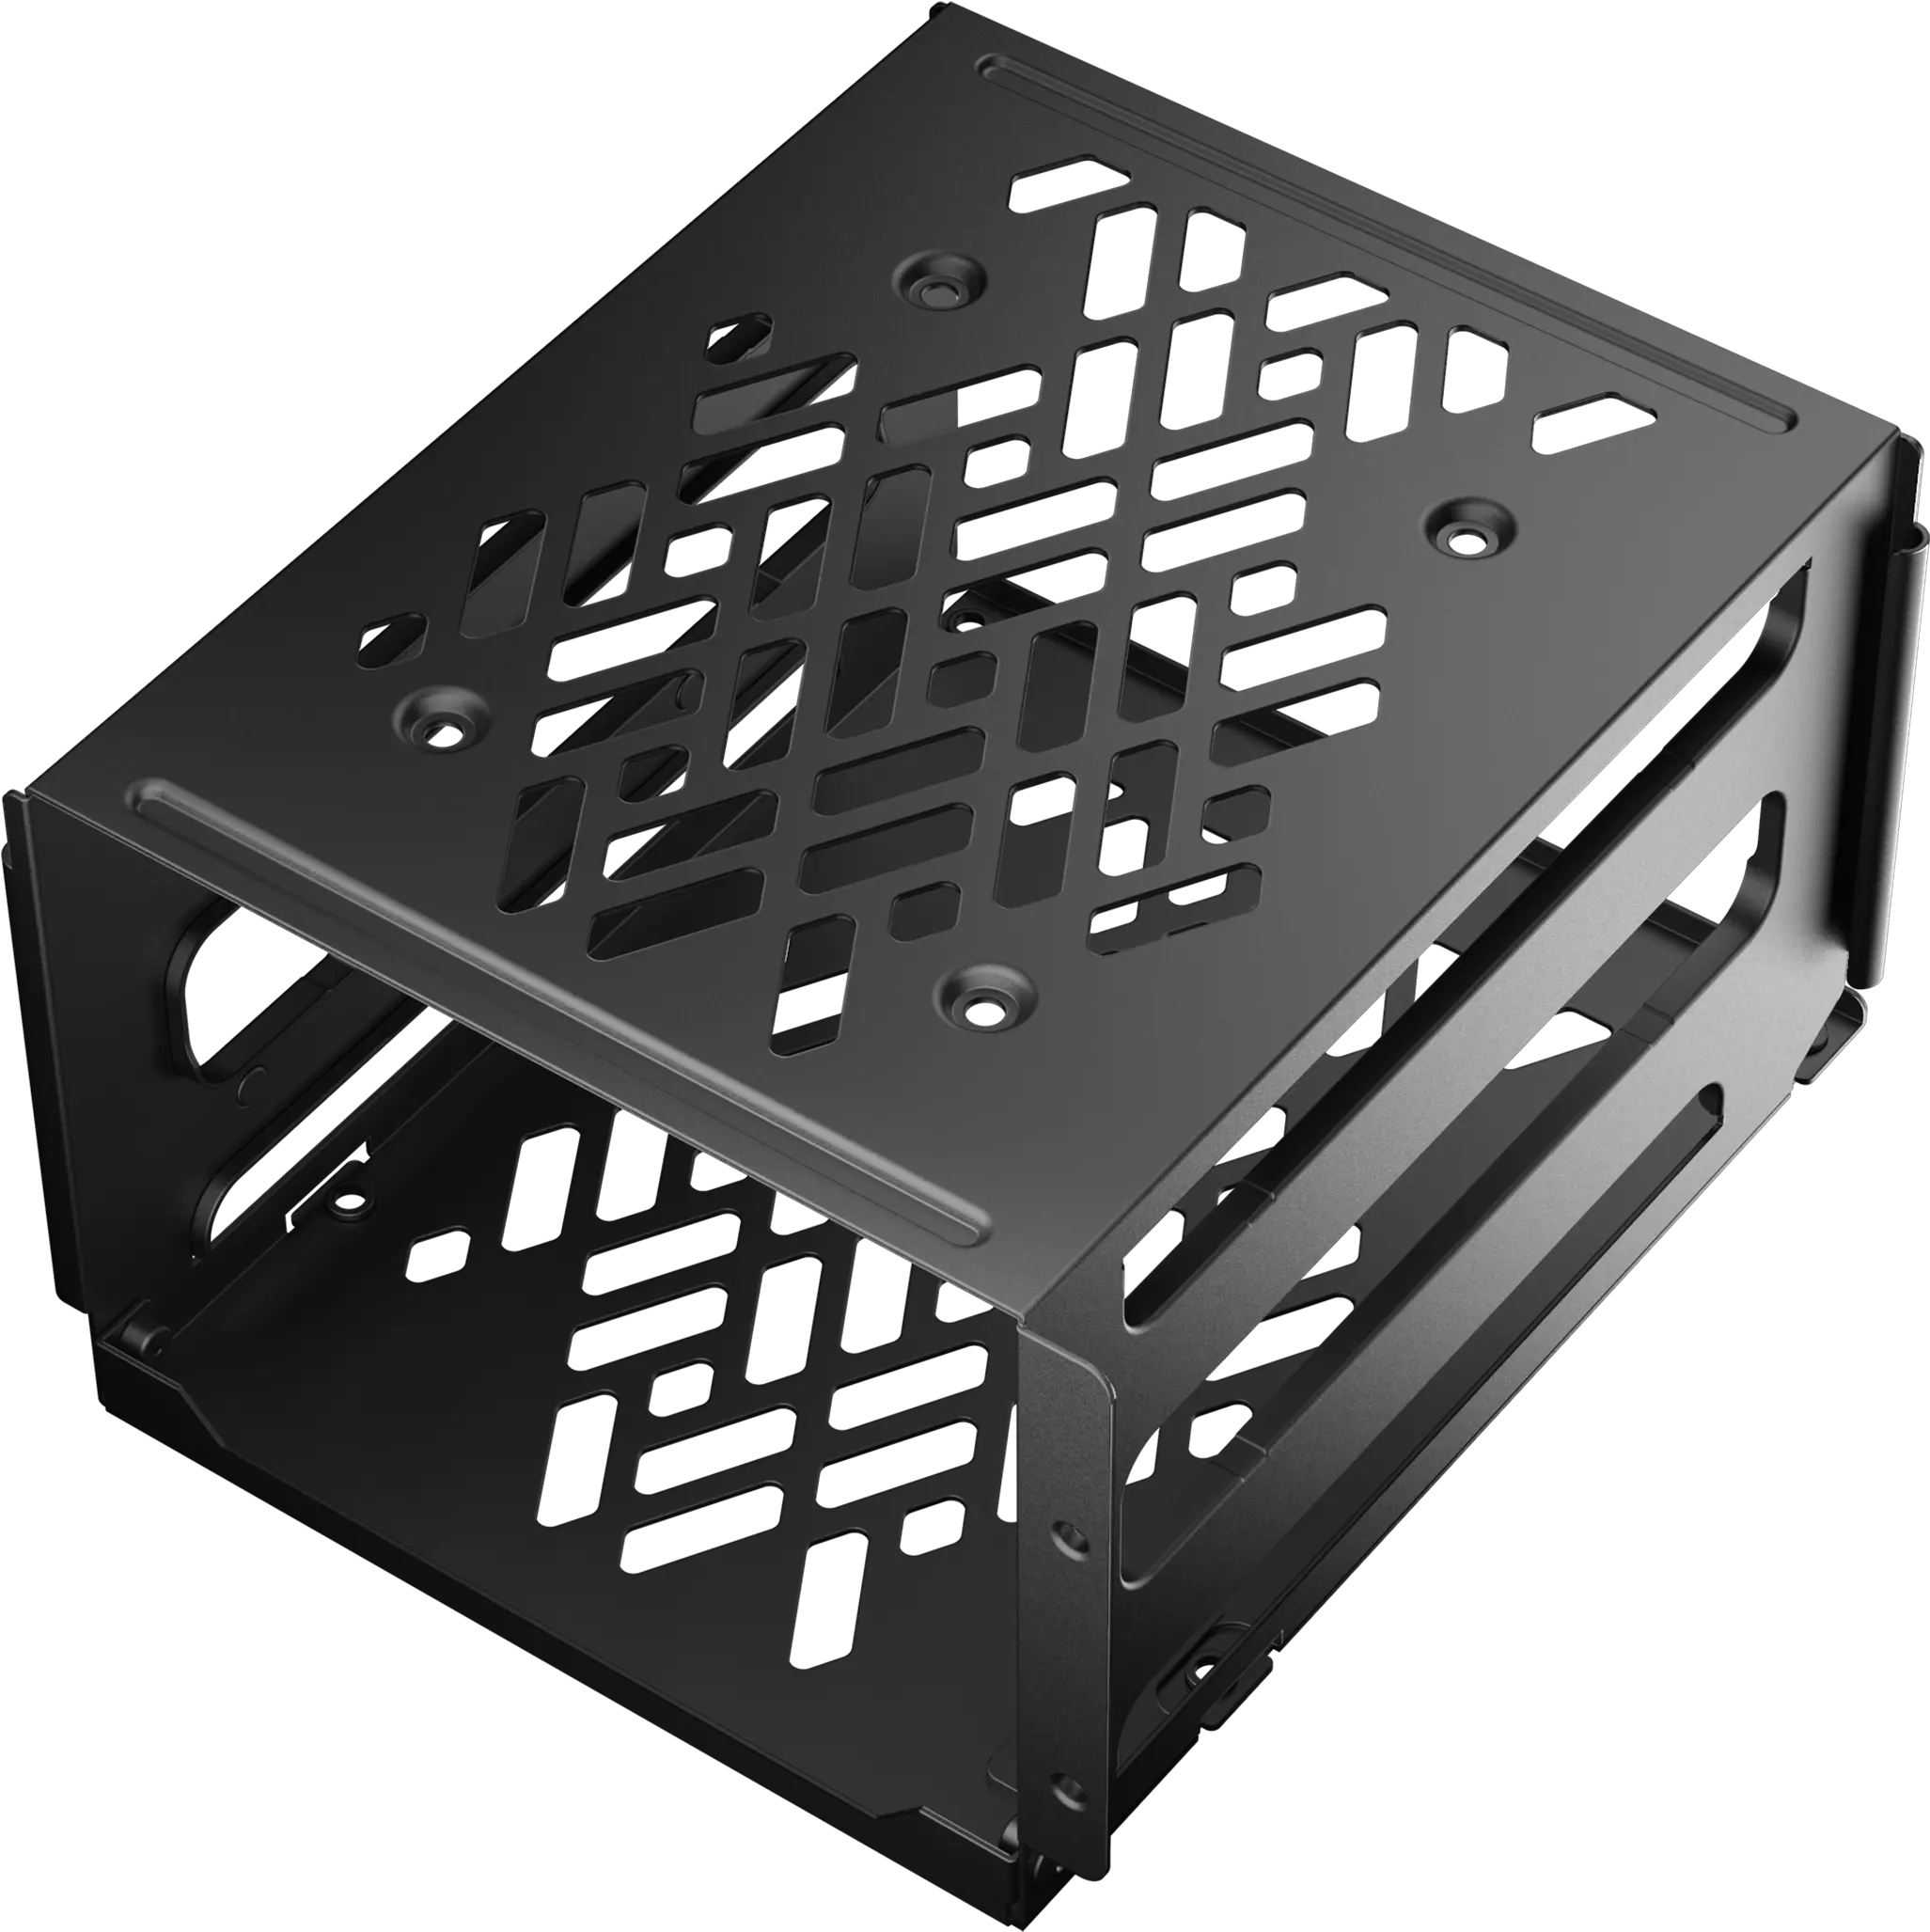 Hard Drive Cage Kit Fractal Design Hdd Cage Png Cage Transparent